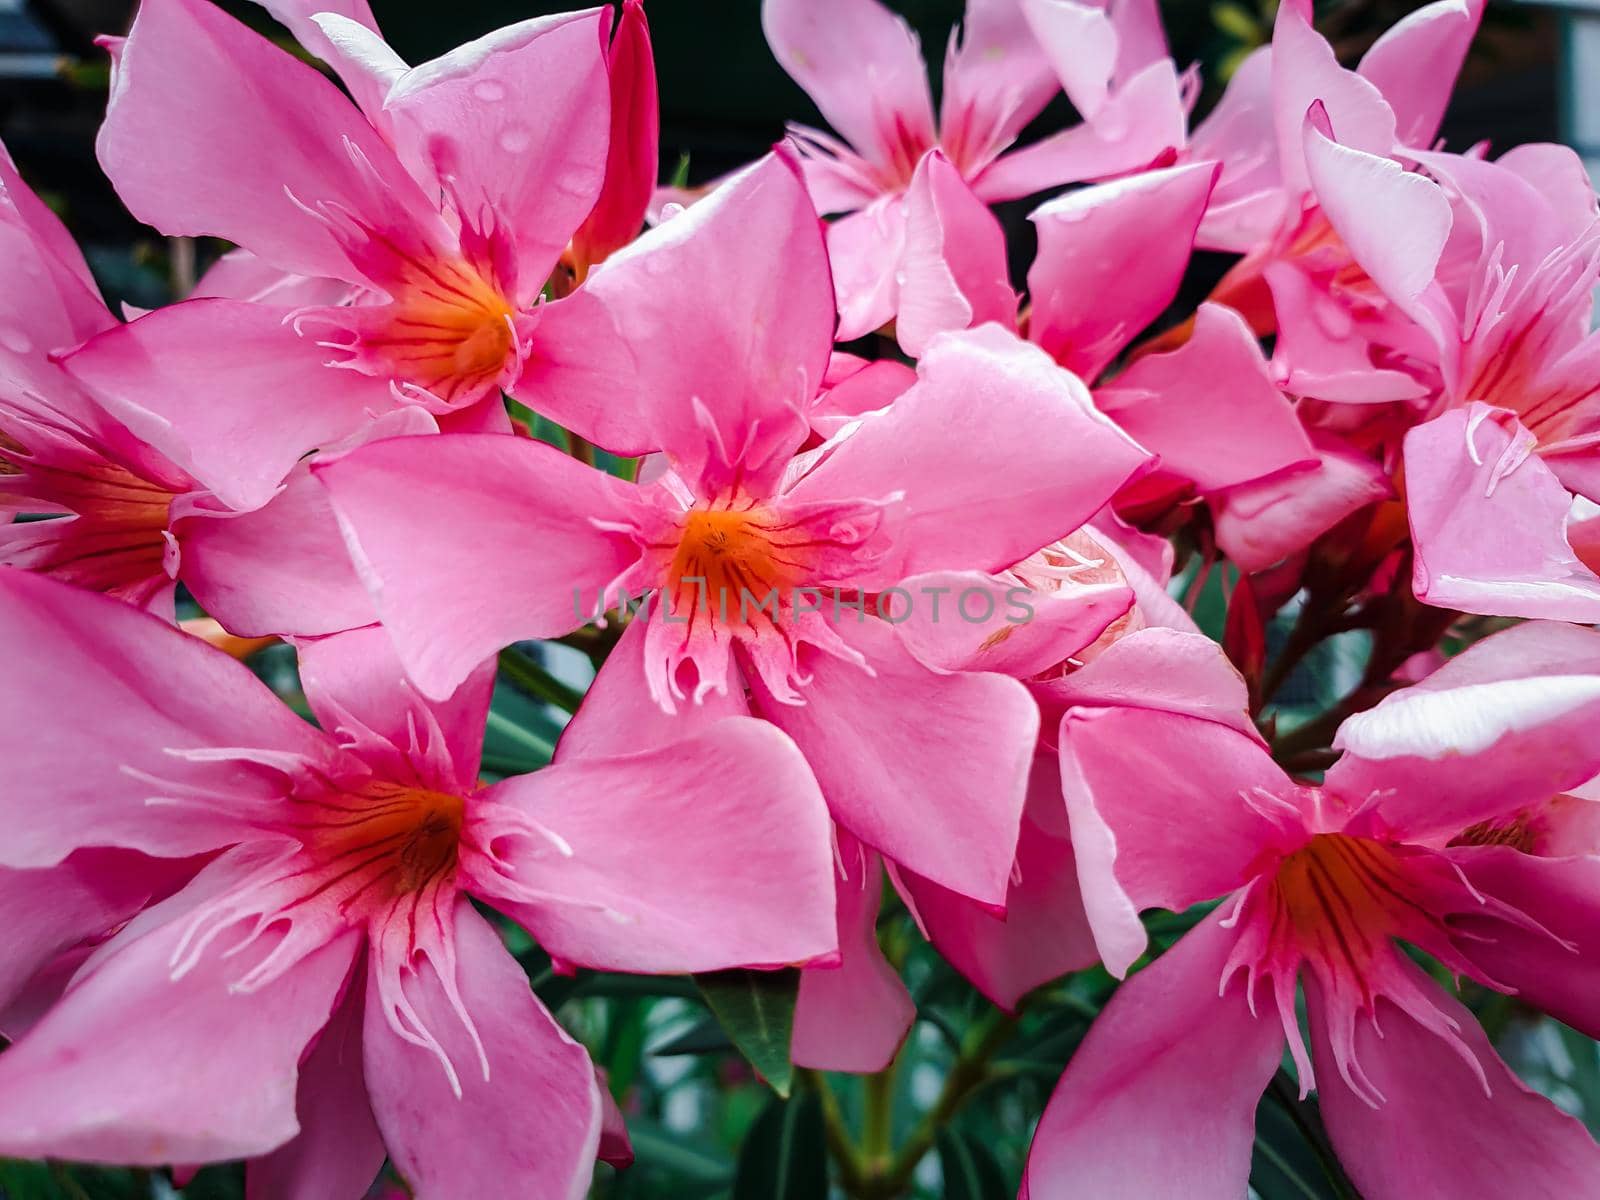 Flower pink color in garden by NongEngEng